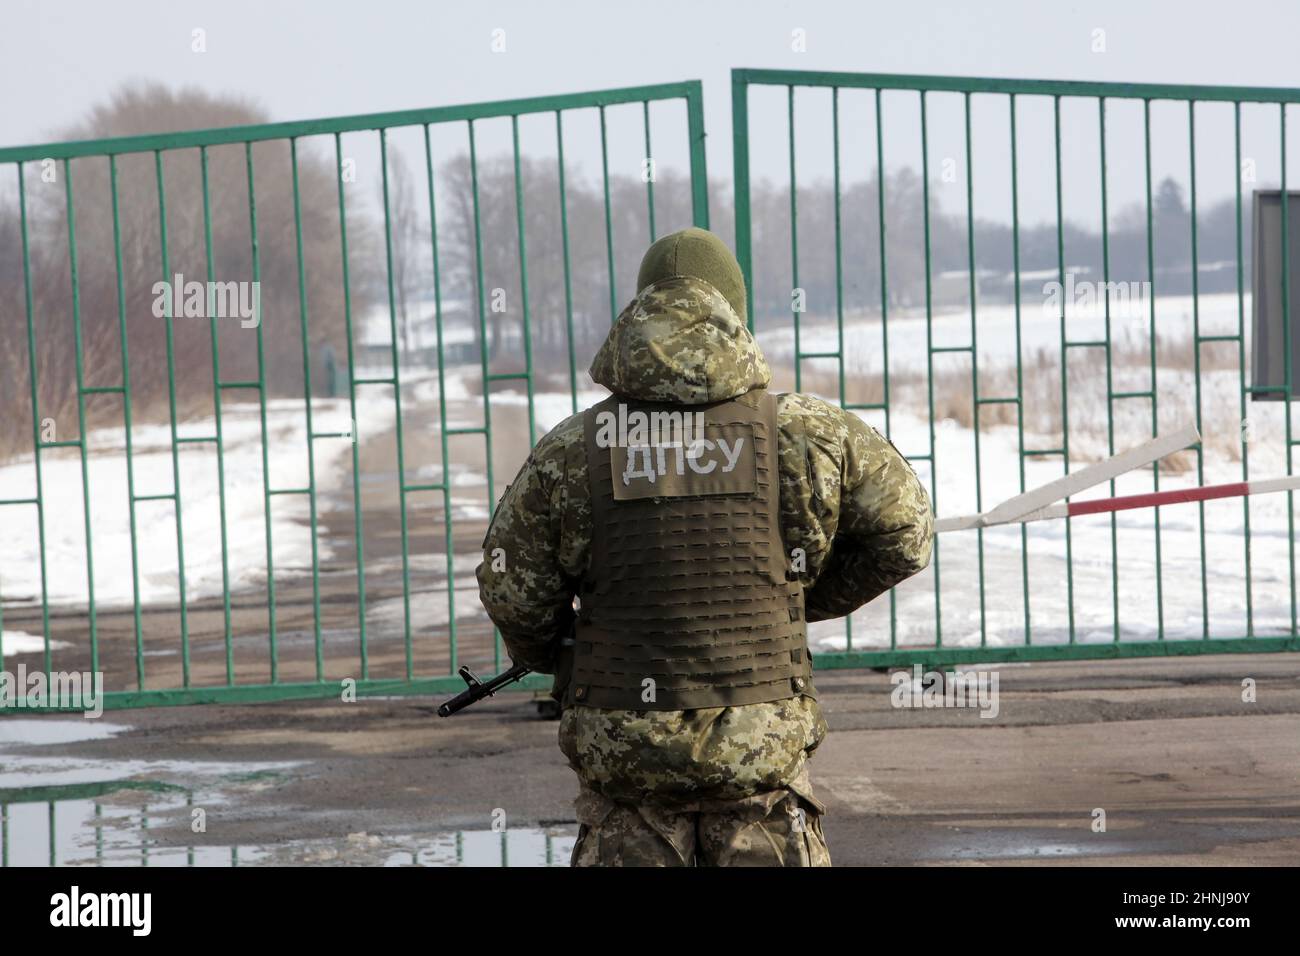 RÉGION DE KHARKIV, UKRAINE - le 16 FÉVRIER 2022 - Un garde-frontière est en service au poste de contrôle de Zhuravlivka, à la frontière entre l'Ukraine et la Russie, qui reste fermé Banque D'Images